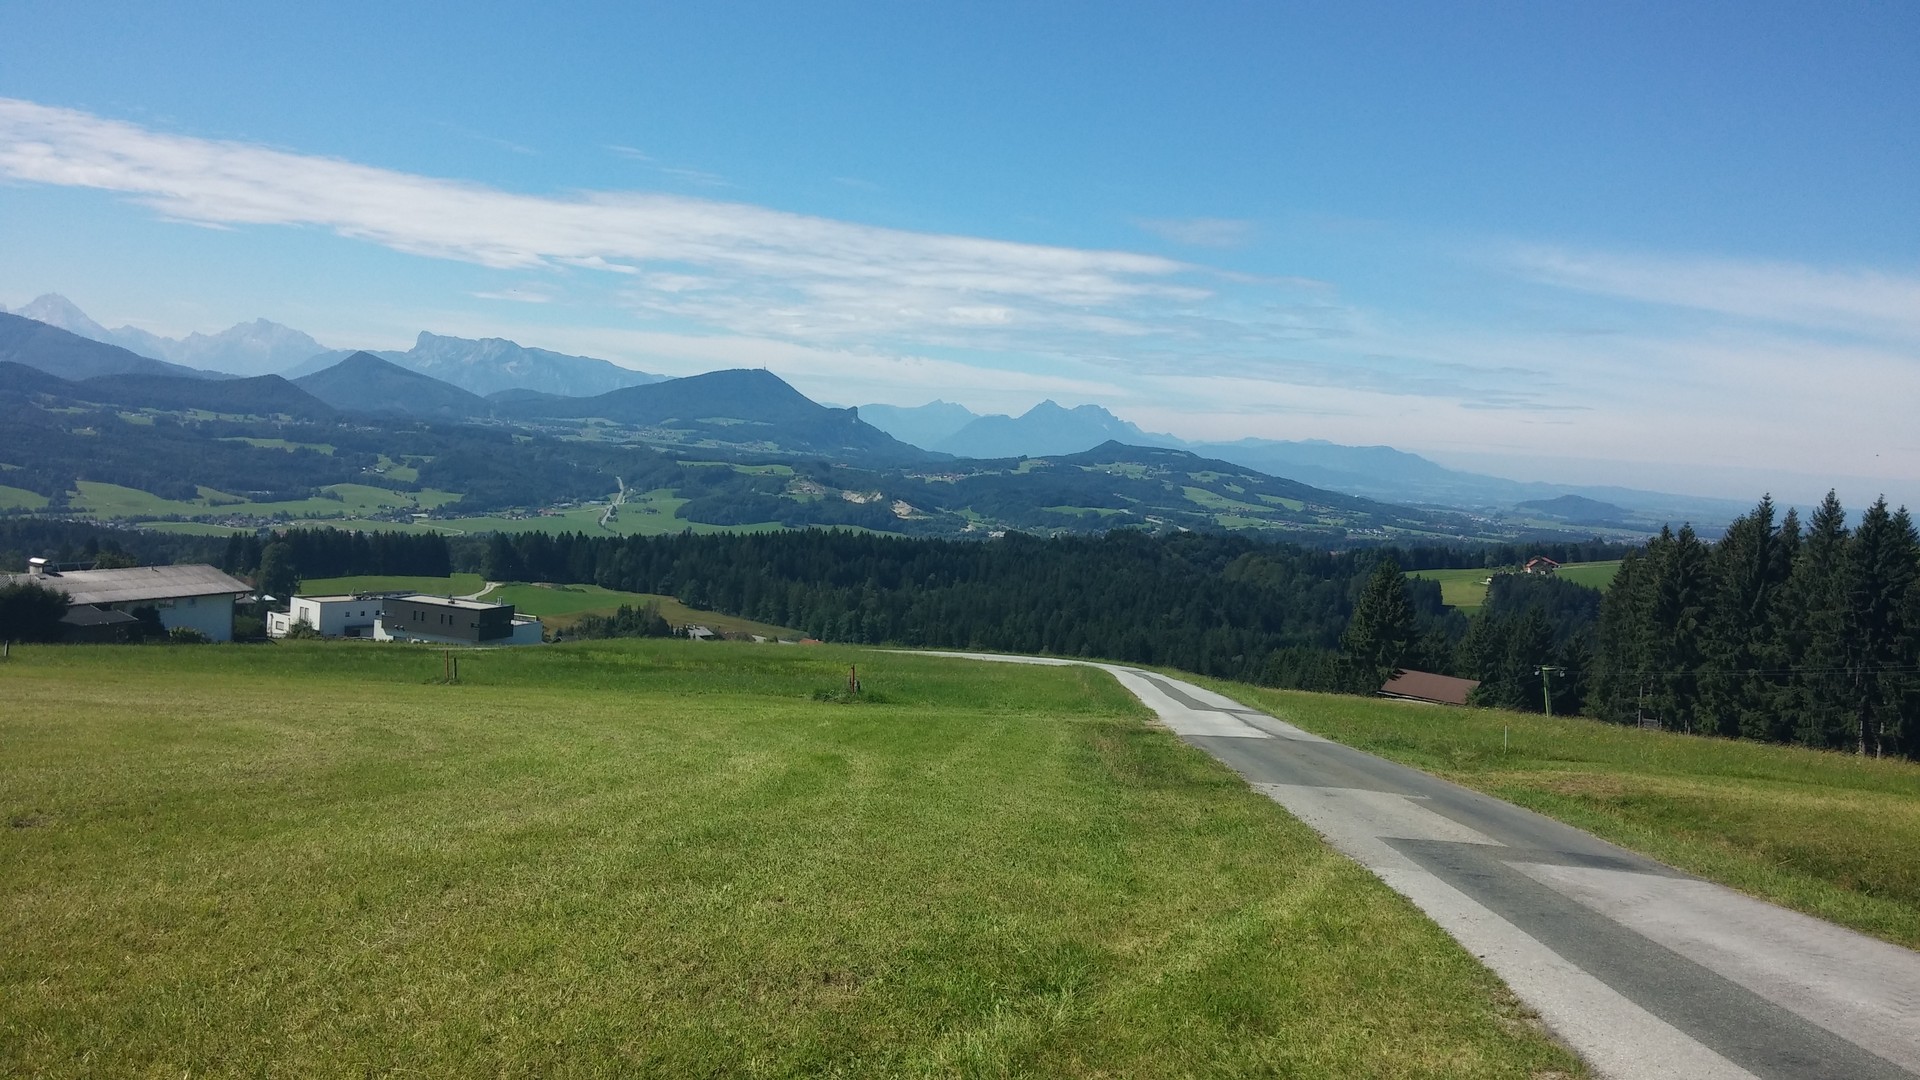 Panorama im mittleren Teil er Anfahrt (Watzmann, Untersberg, Gaisberg, Staufen)